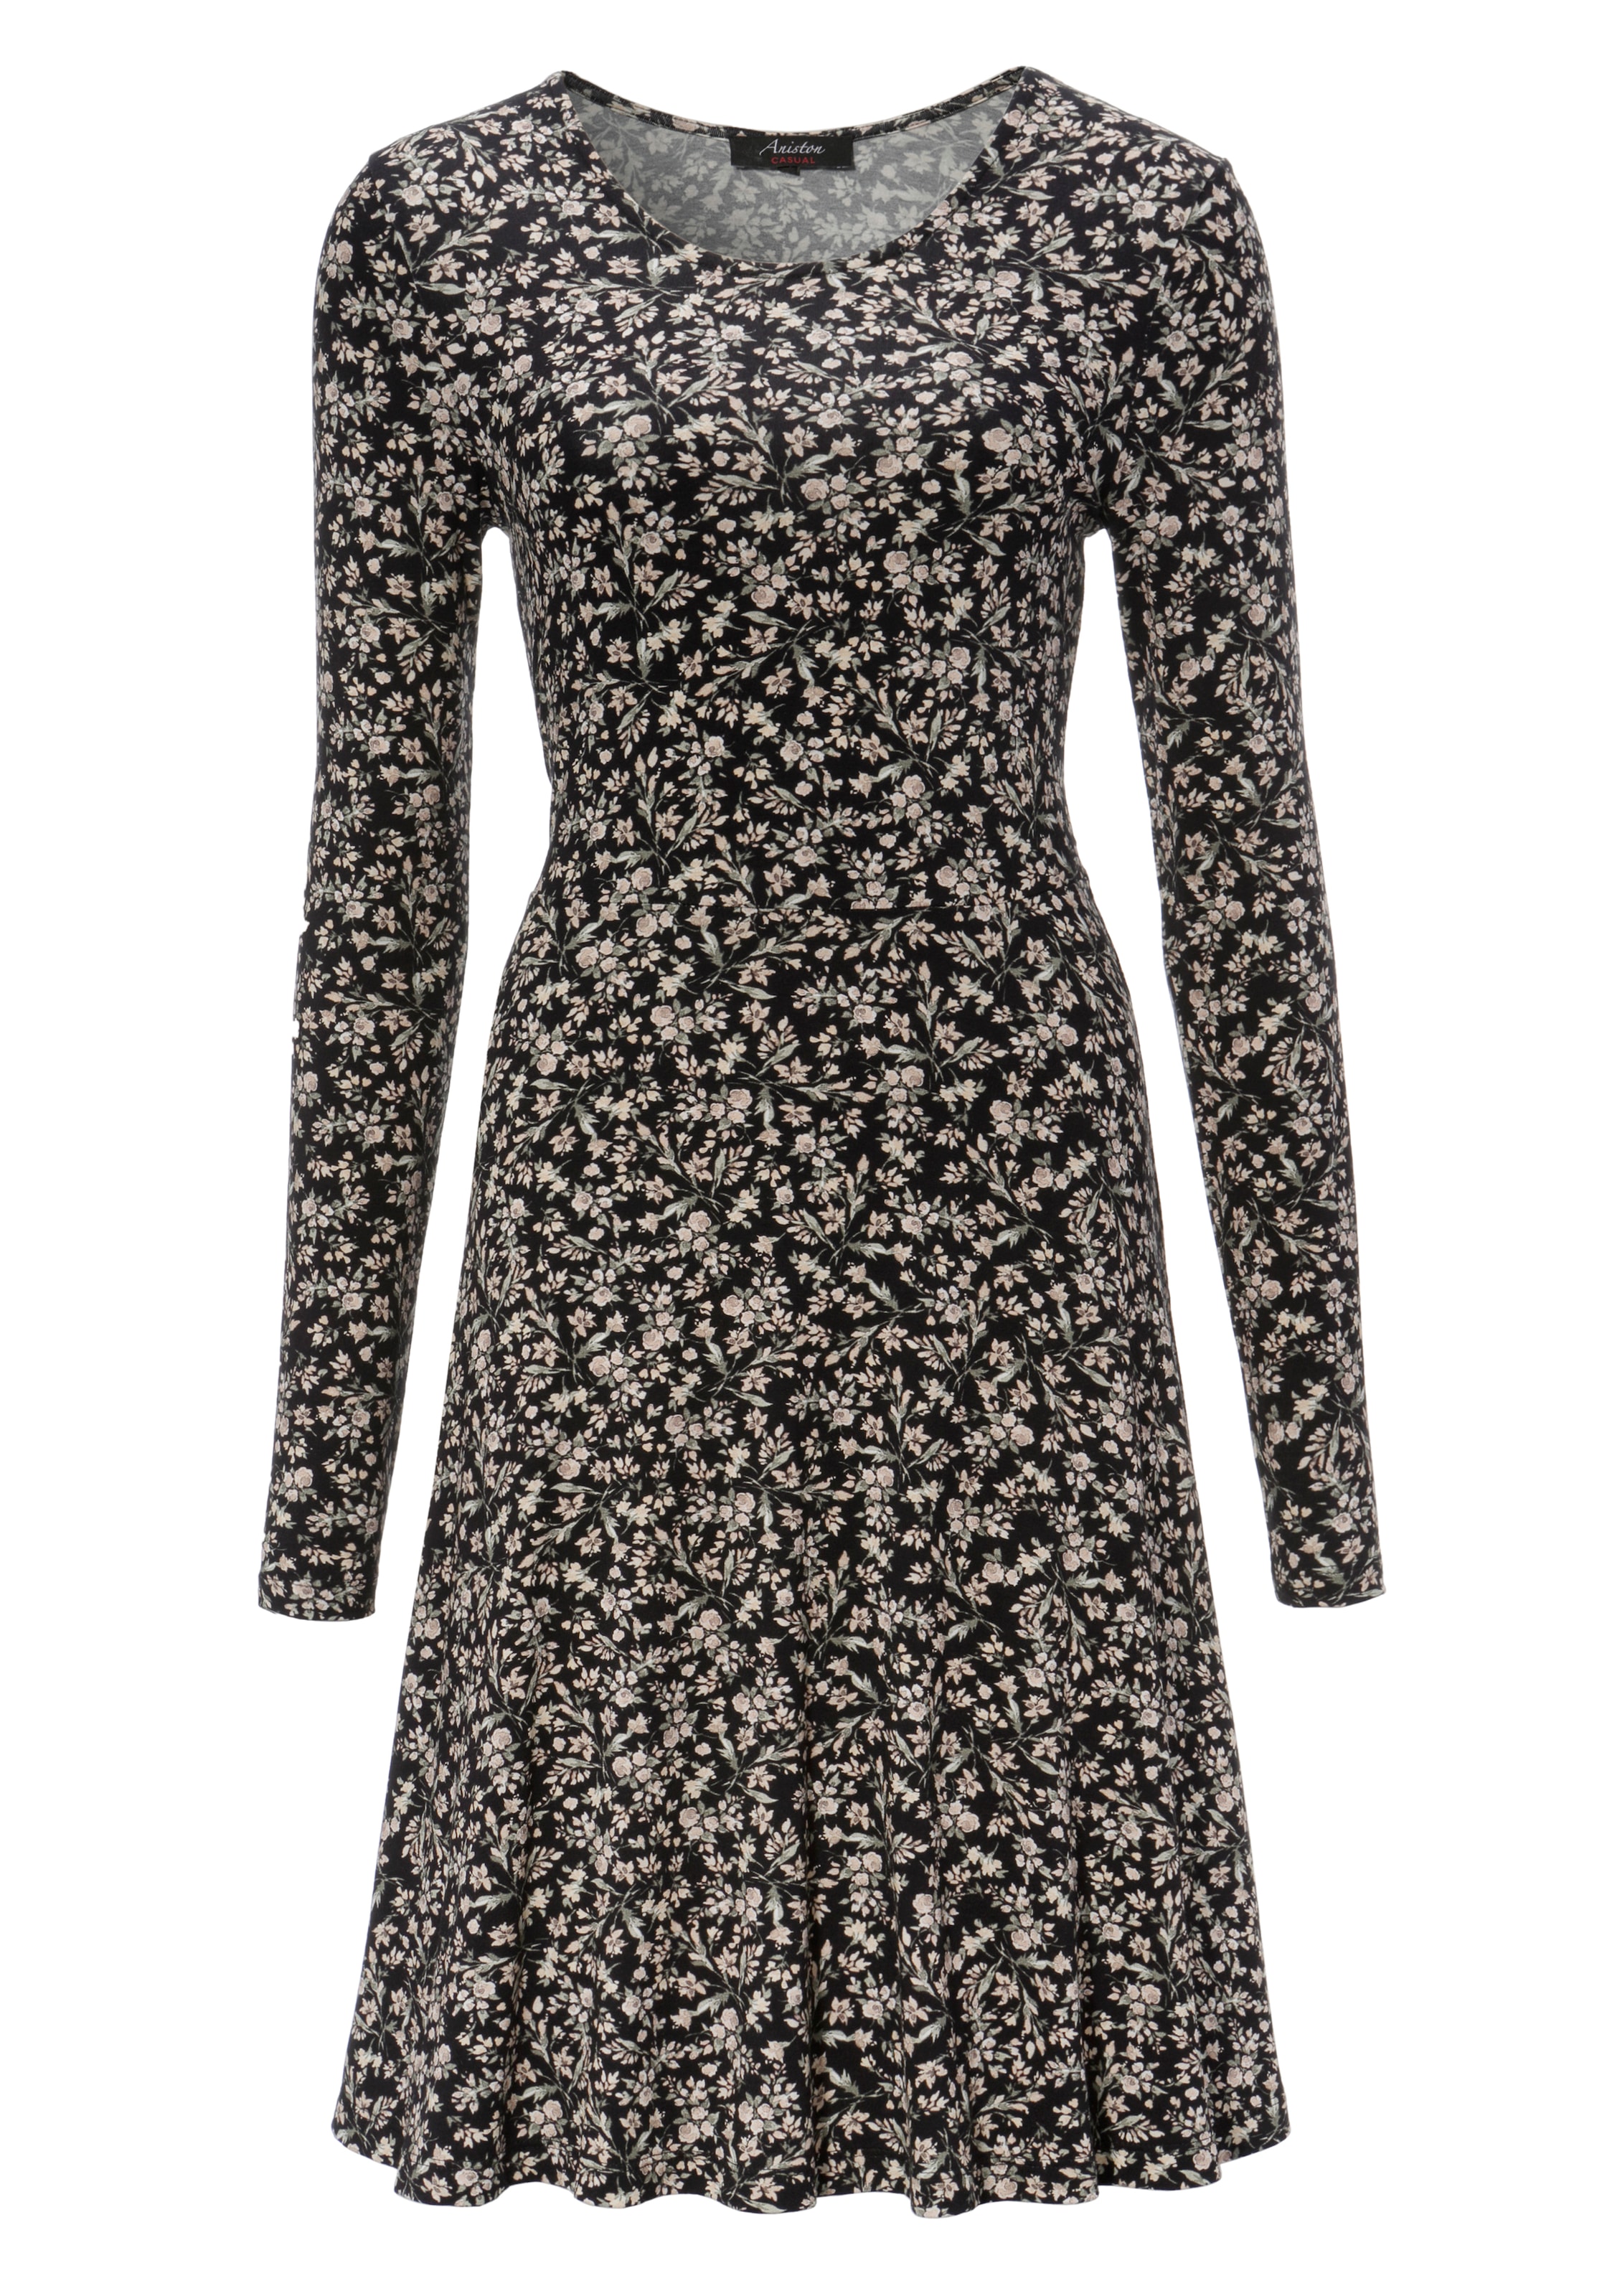 CASUAL Blumendruck Jerseykleid, Aniston günstig mit kaufen zartem